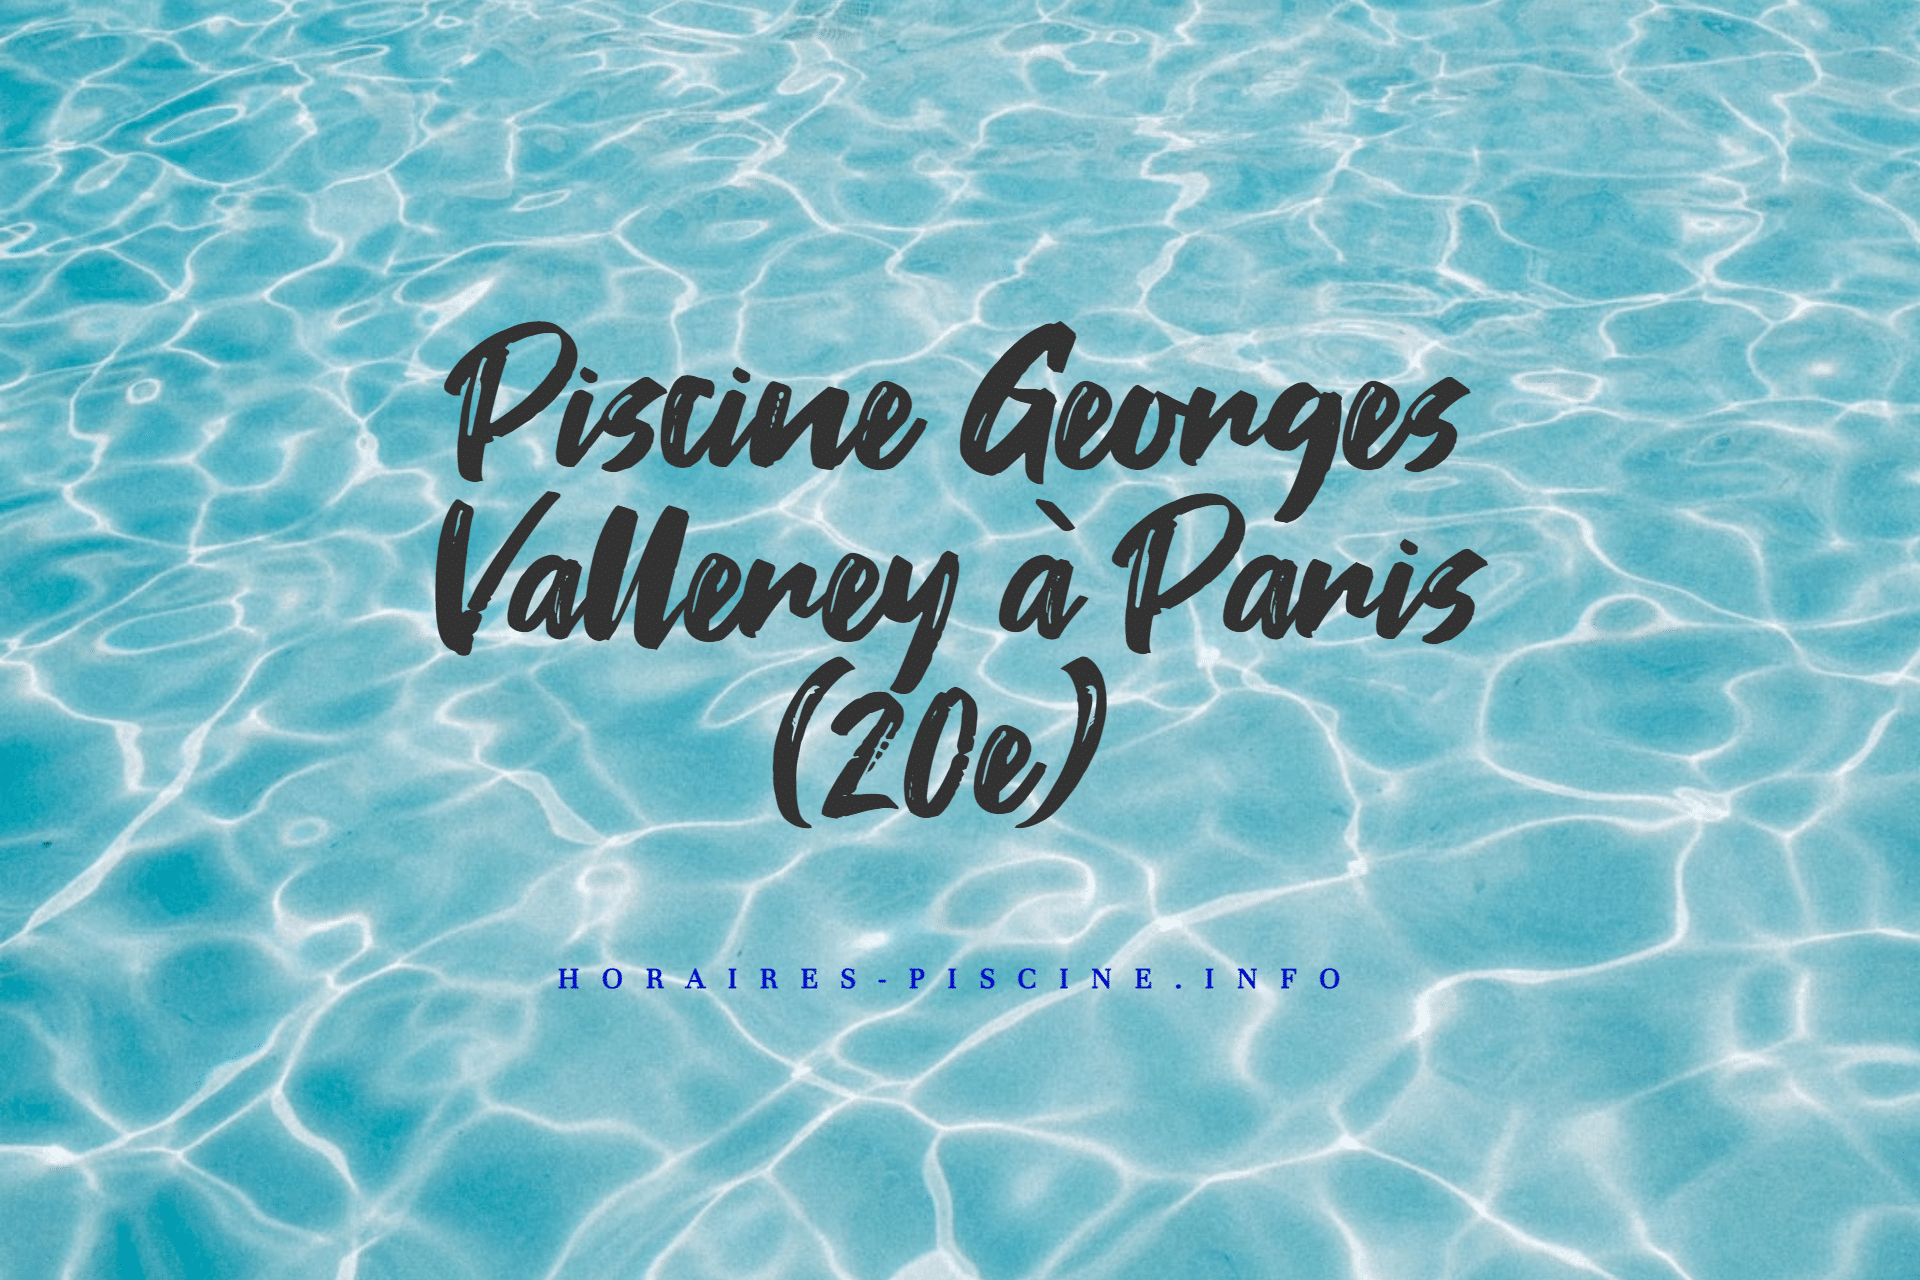 Piscine Georges Vallerey à Paris (20e)